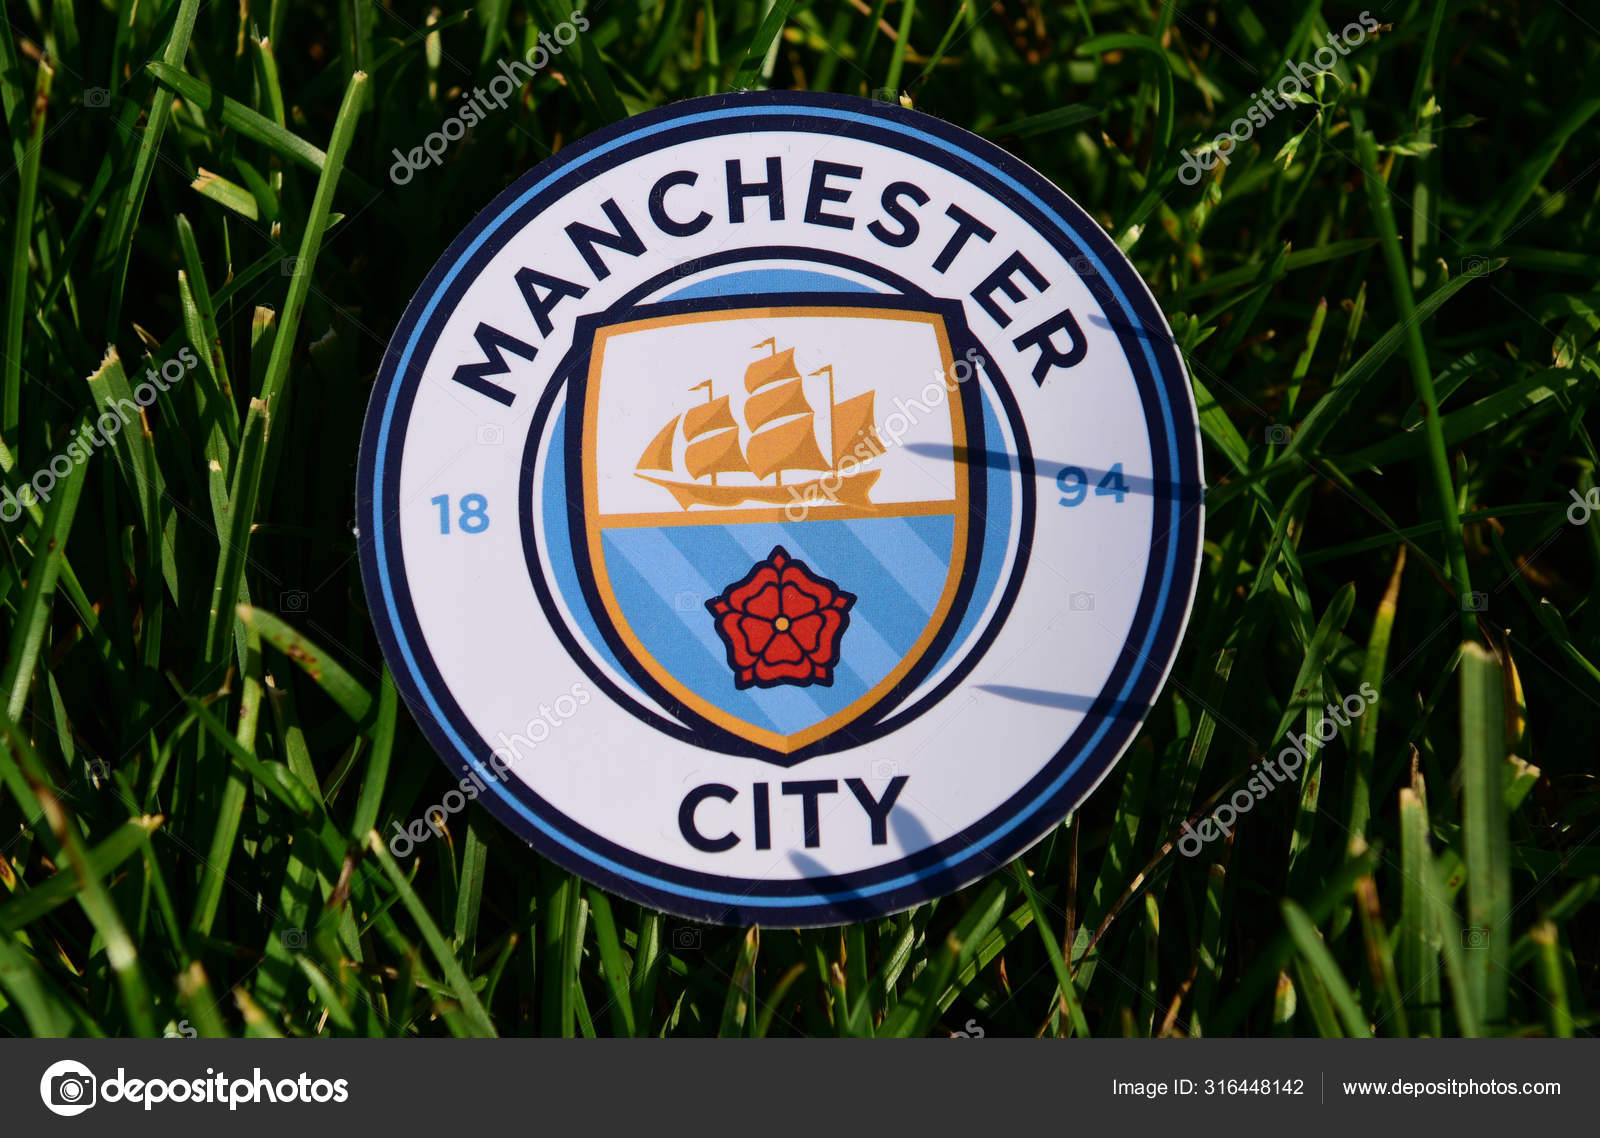 172 Manchester City Logo Stock Photos Free Royalty Free Manchester City Logo Images Depositphotos